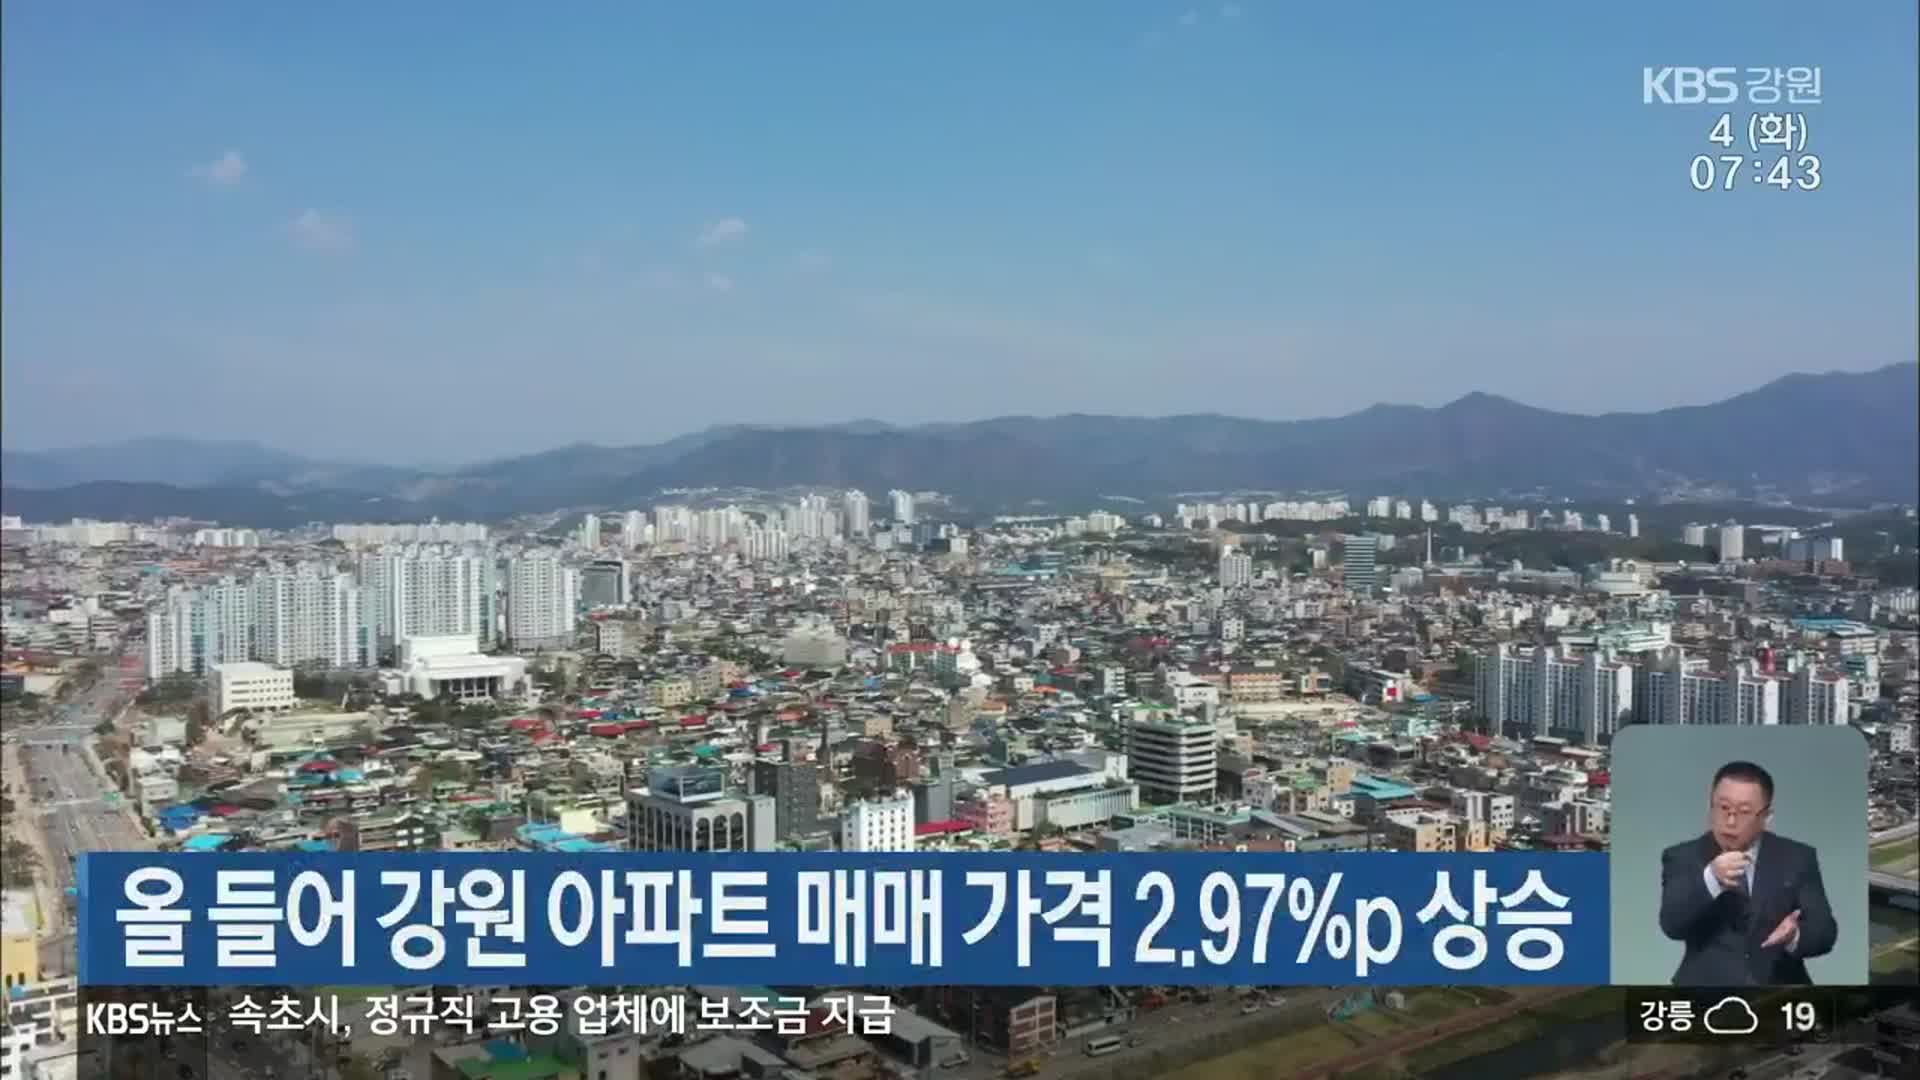 올 들어 강원 아파트 매매 가격 2.97%p 상승